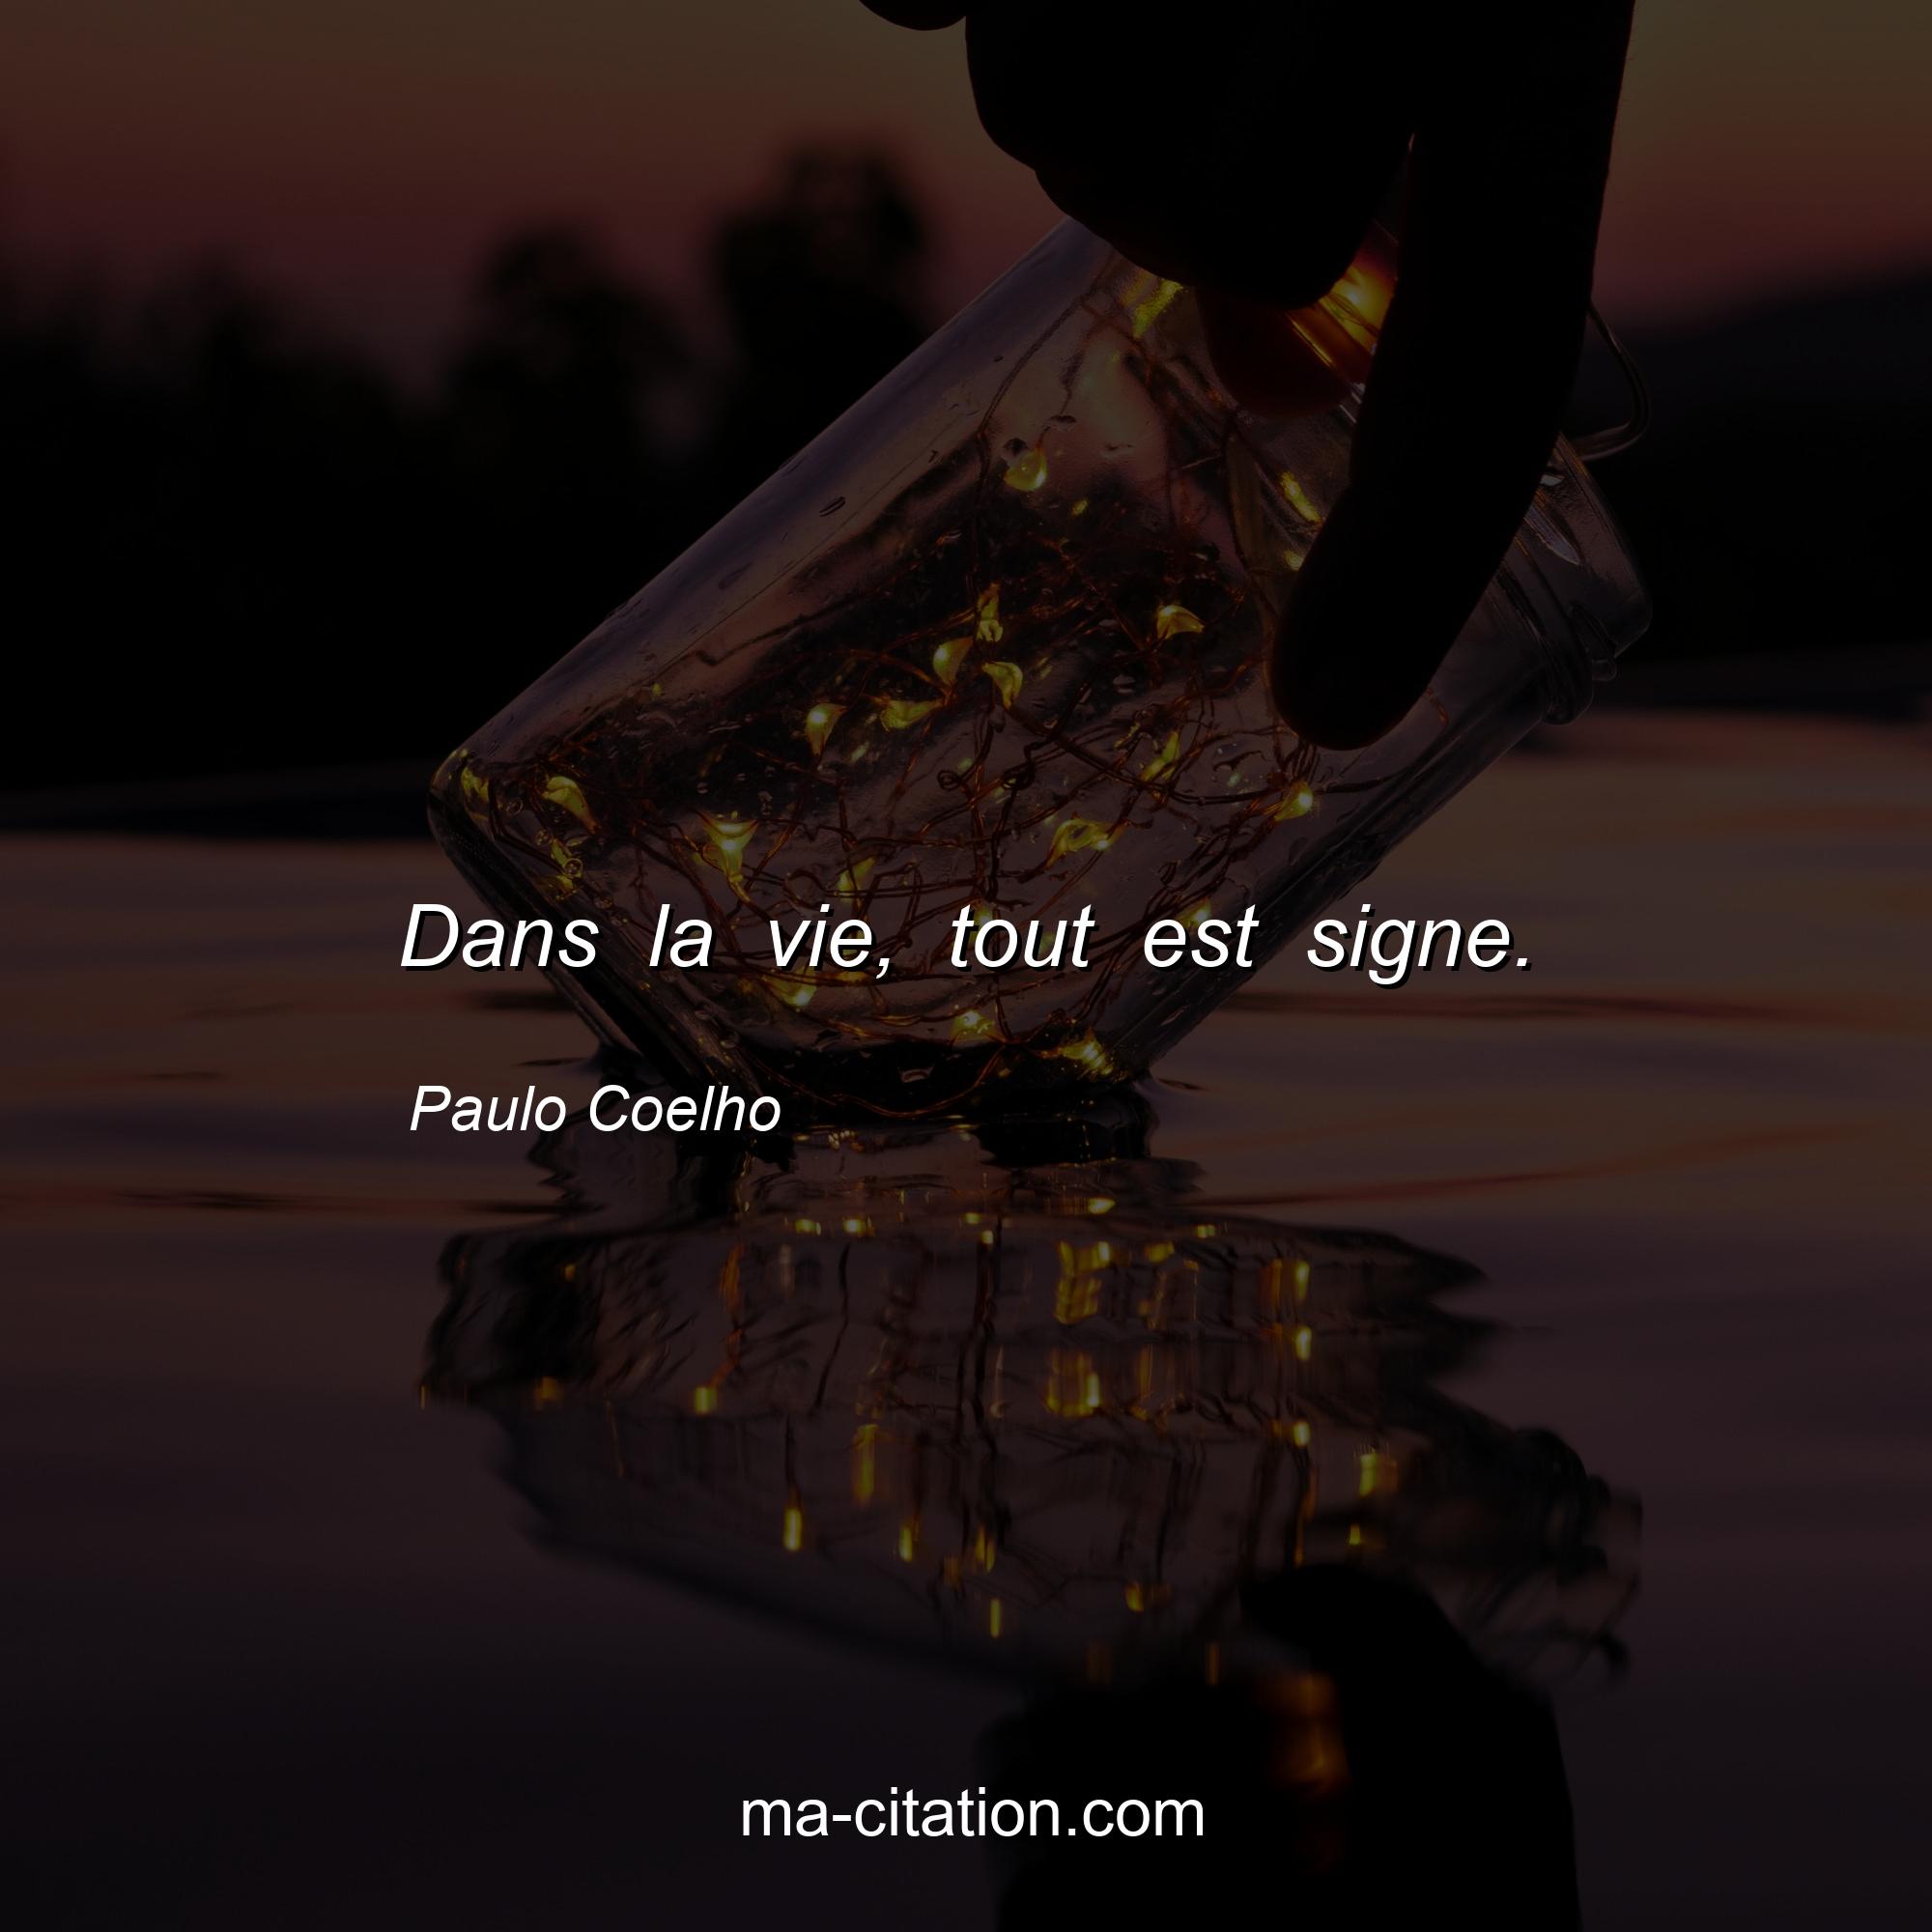 Paulo Coelho : Dans la vie, tout est signe.